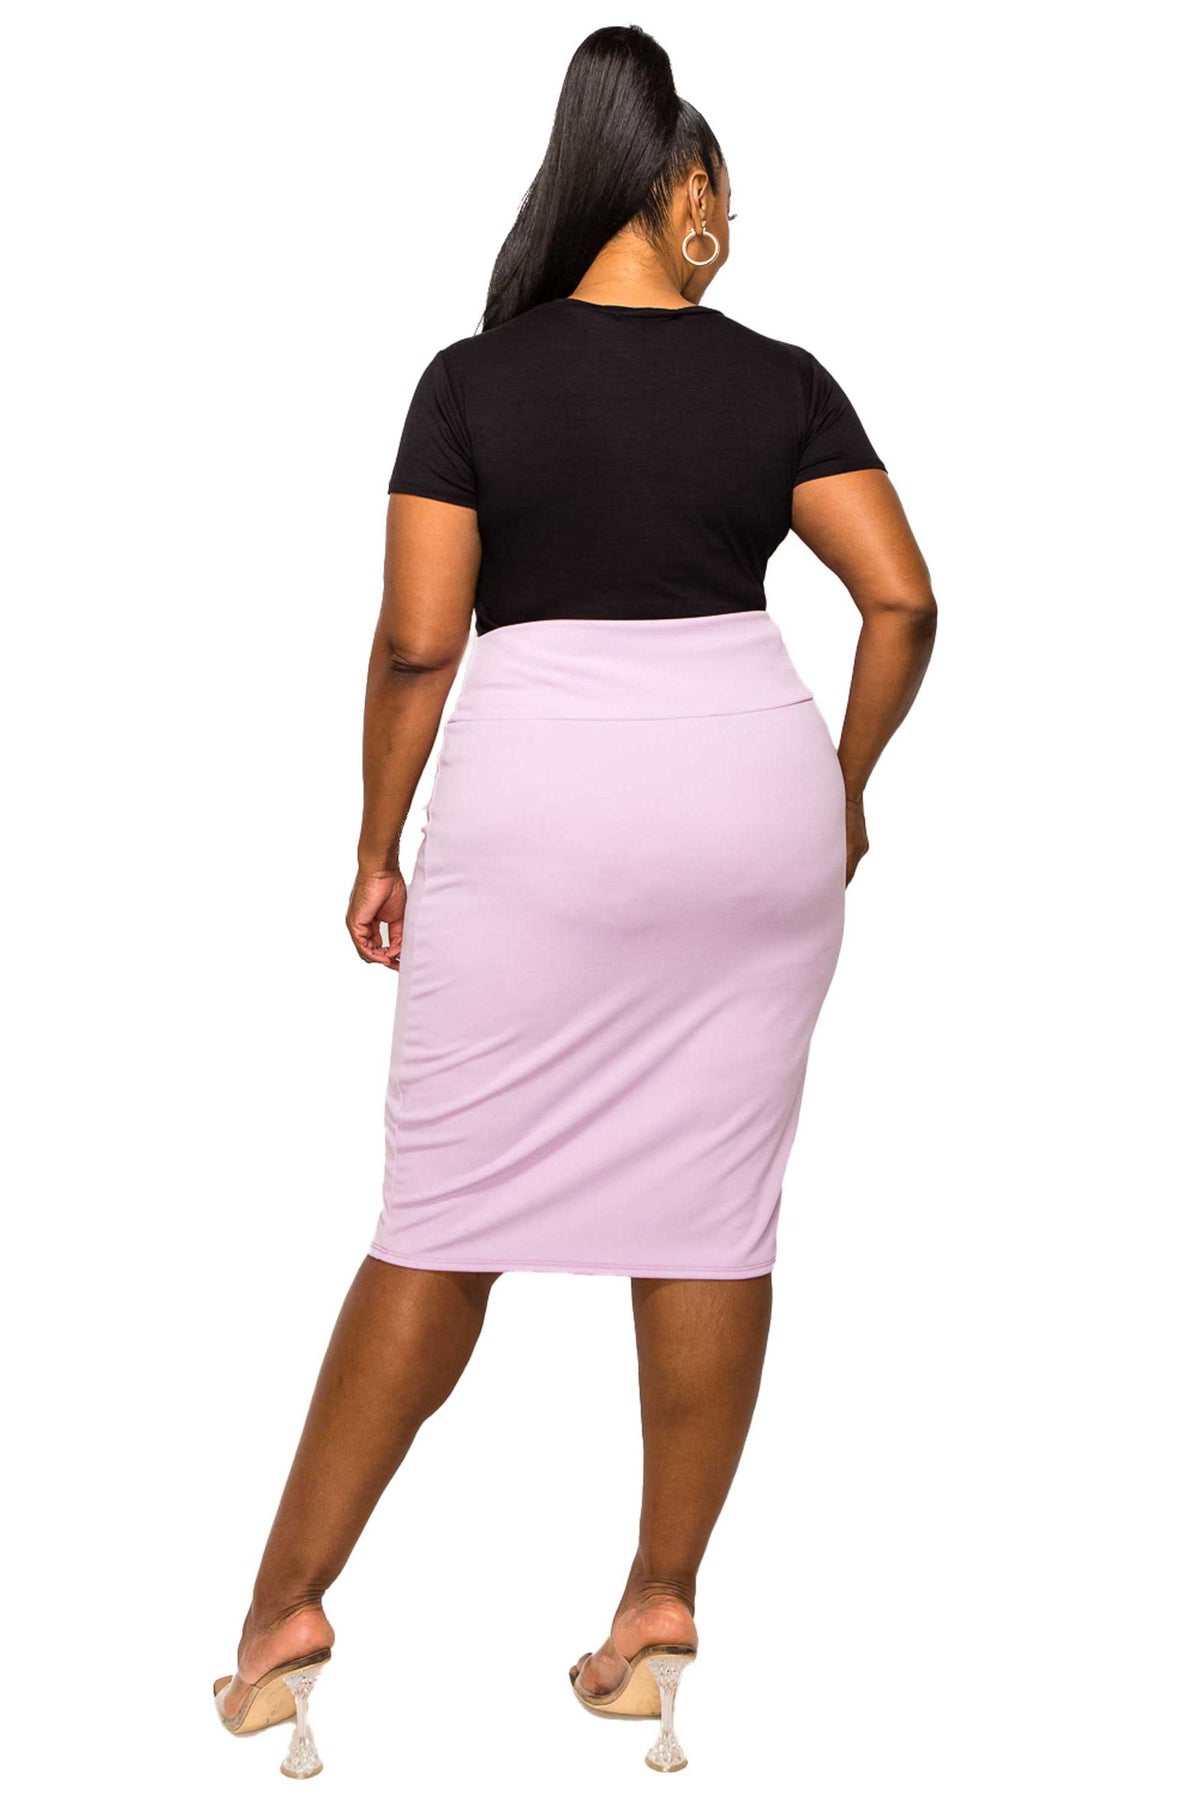 livd apparel plus size boutique basic pencil skirt in lavenderlivd apparel plus size boutique basic pencil skirt in lavender